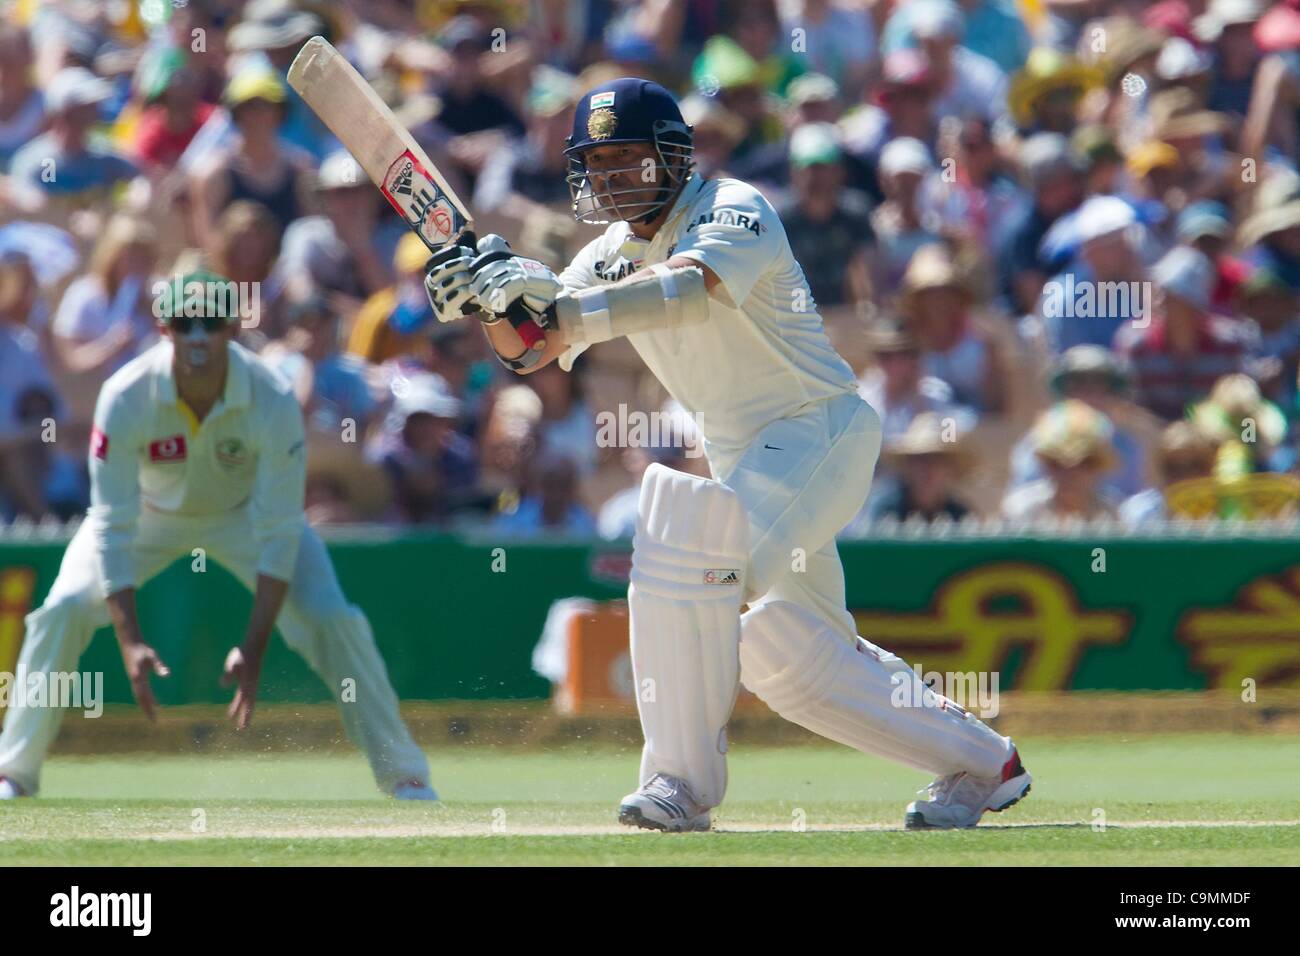 26.01.2012 Adelaide, Australien. Sachin Tendulkar Indien in Aktion während des zweiten Tages der 4. Cricket Test Match zwischen Australien und Indien spielte an der Adelaide Oval. Stockfoto